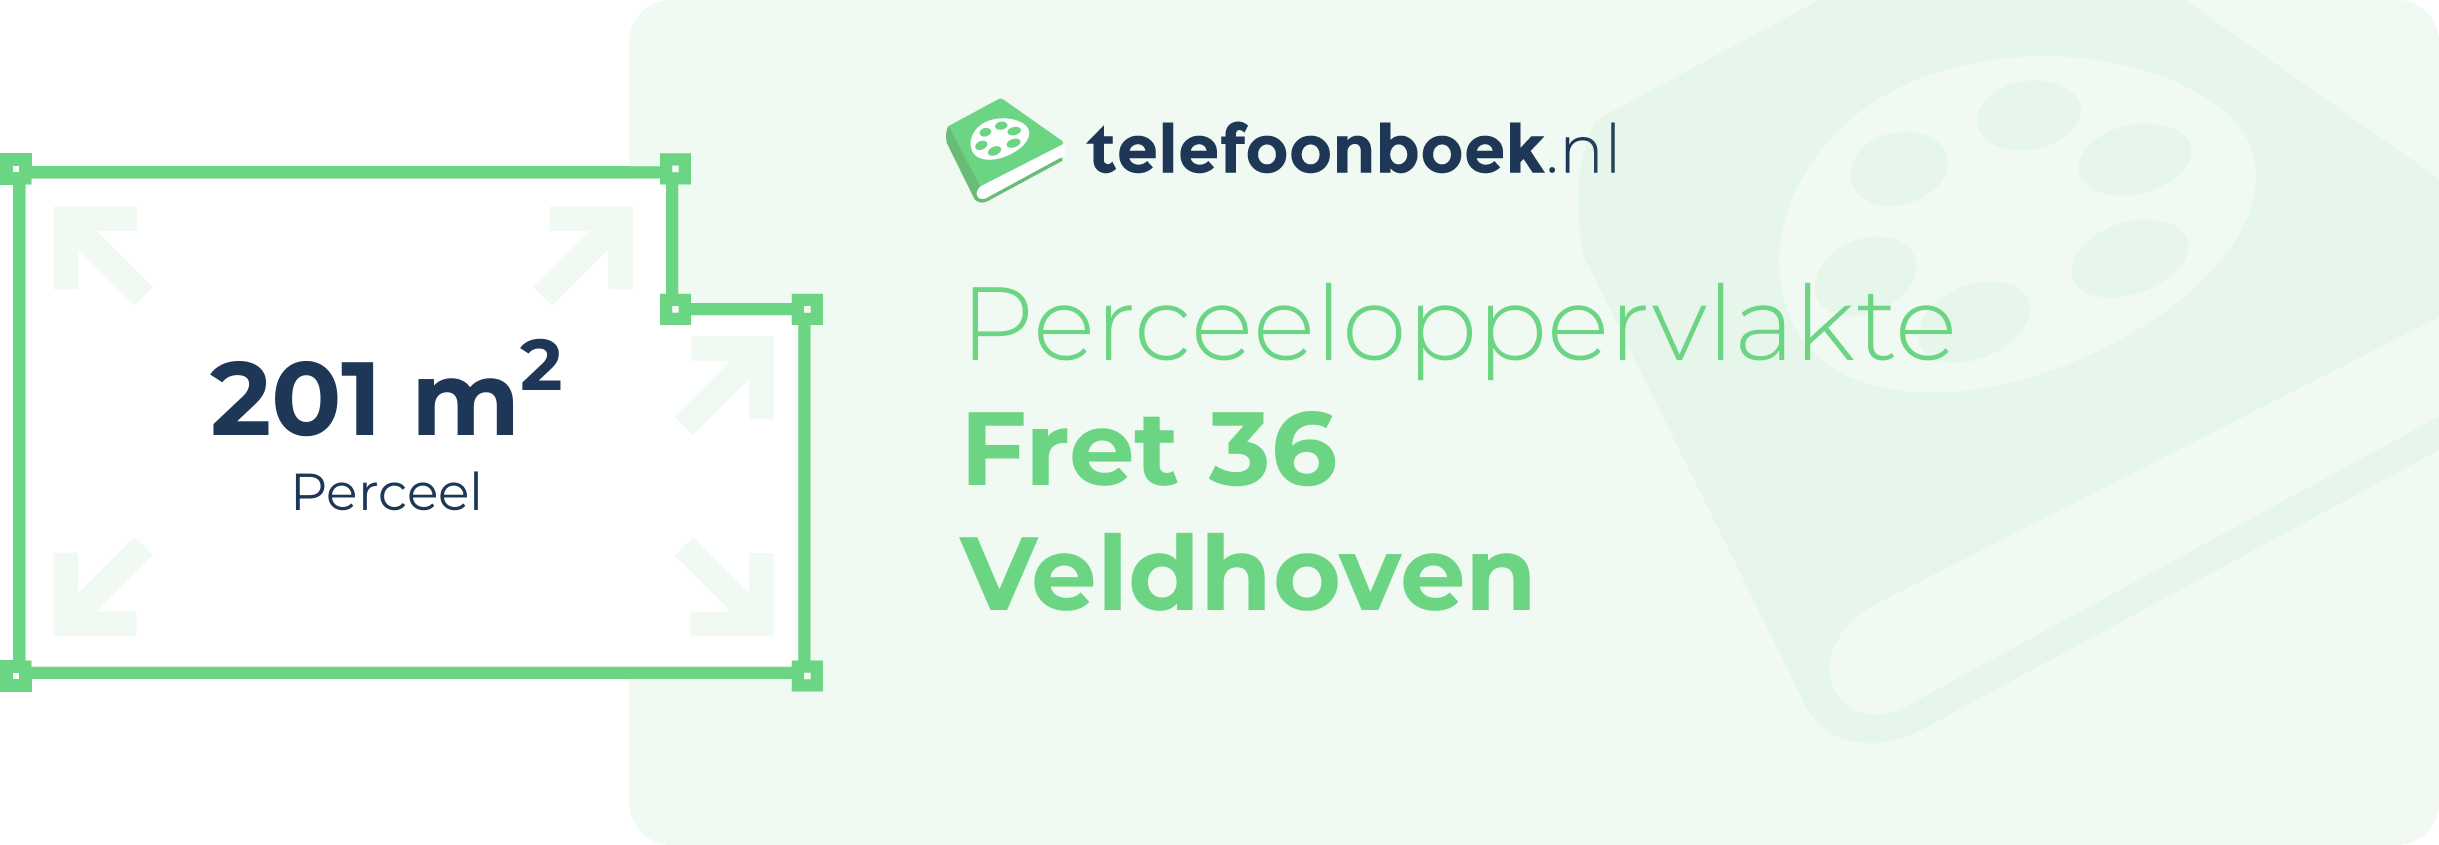 Perceeloppervlakte Fret 36 Veldhoven